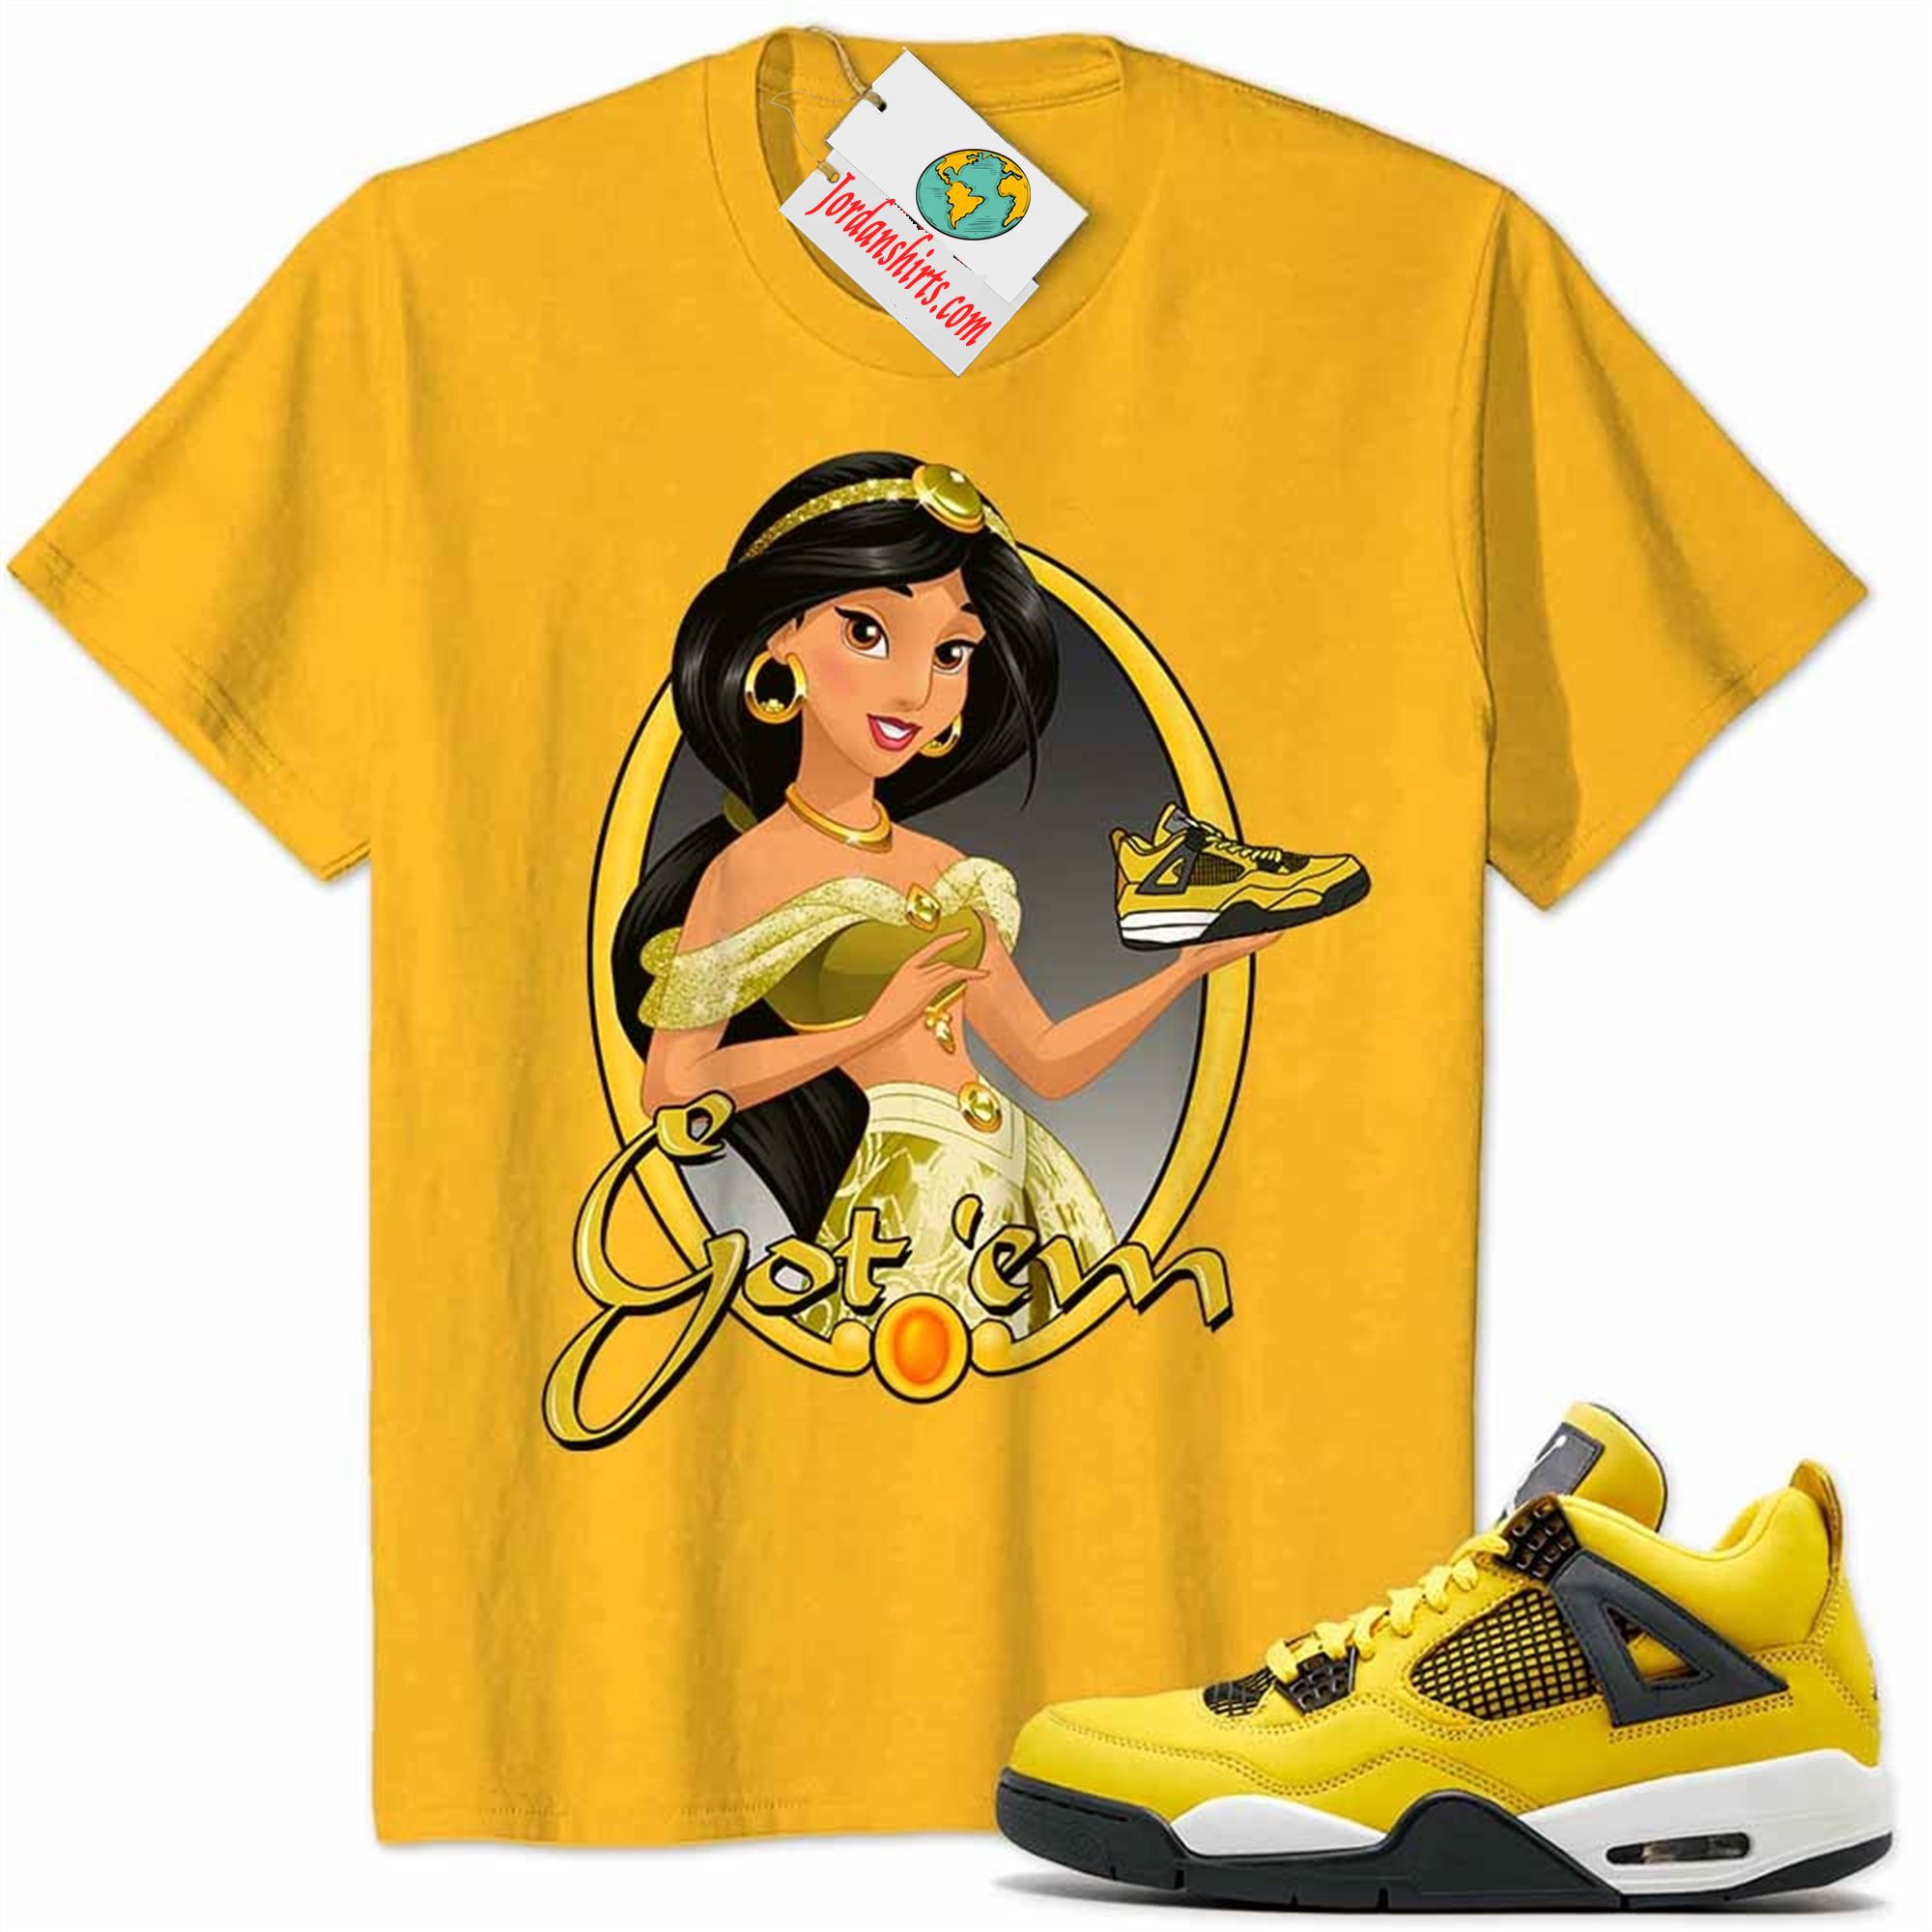 Jordan 4 Shirt, Disney Aladdin Jasmine Princess Got Em Gold Air Jordan 4 Tour Yellow Lightning 4s Full Size Up To 5xl